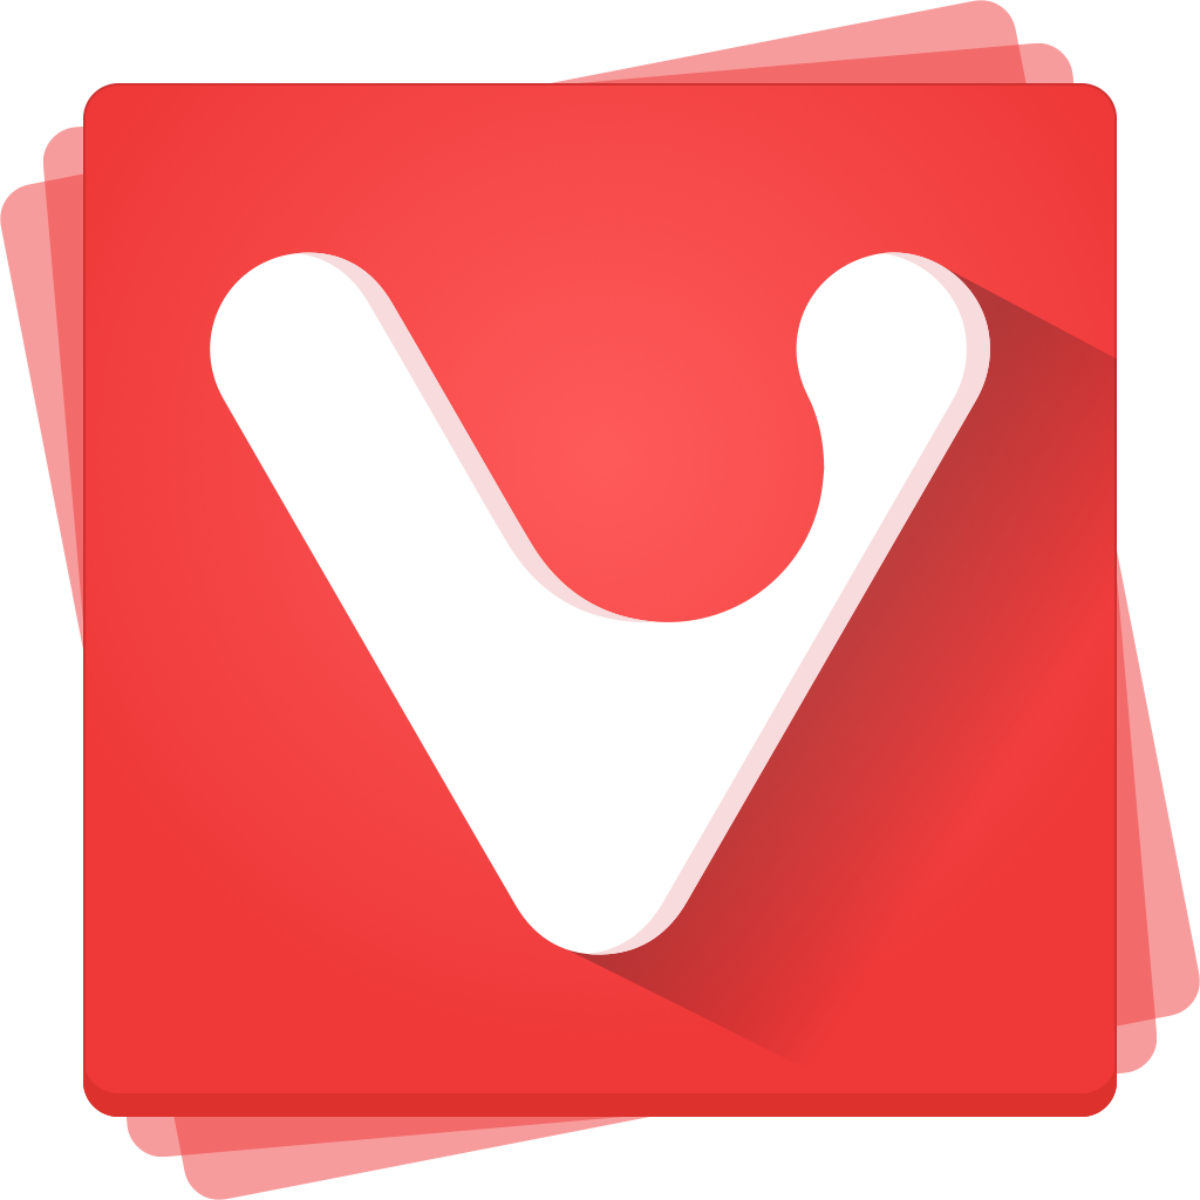 Vivaldi browser скачать бесплатно на русском языке